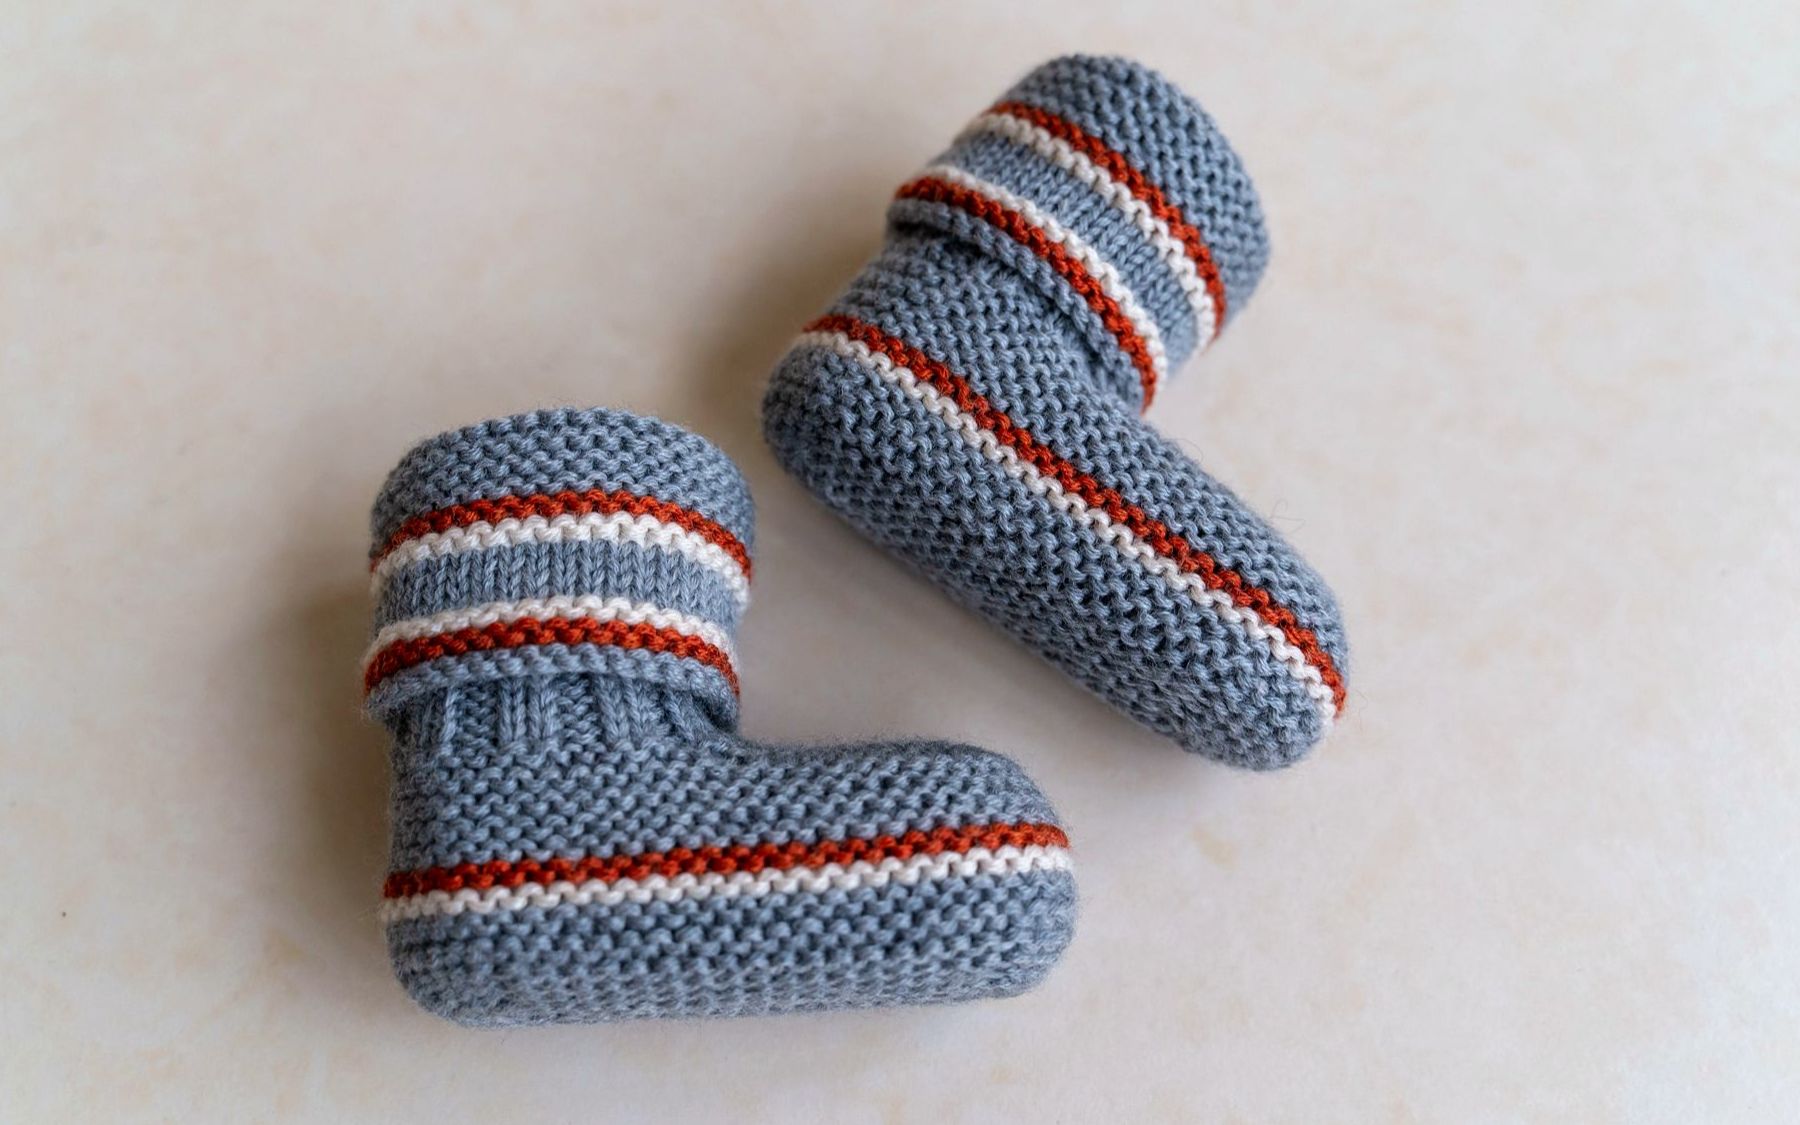 厂家直销 欧美手工编织宝宝毛线学步鞋婴儿鞋新生儿手工针织成品-阿里巴巴